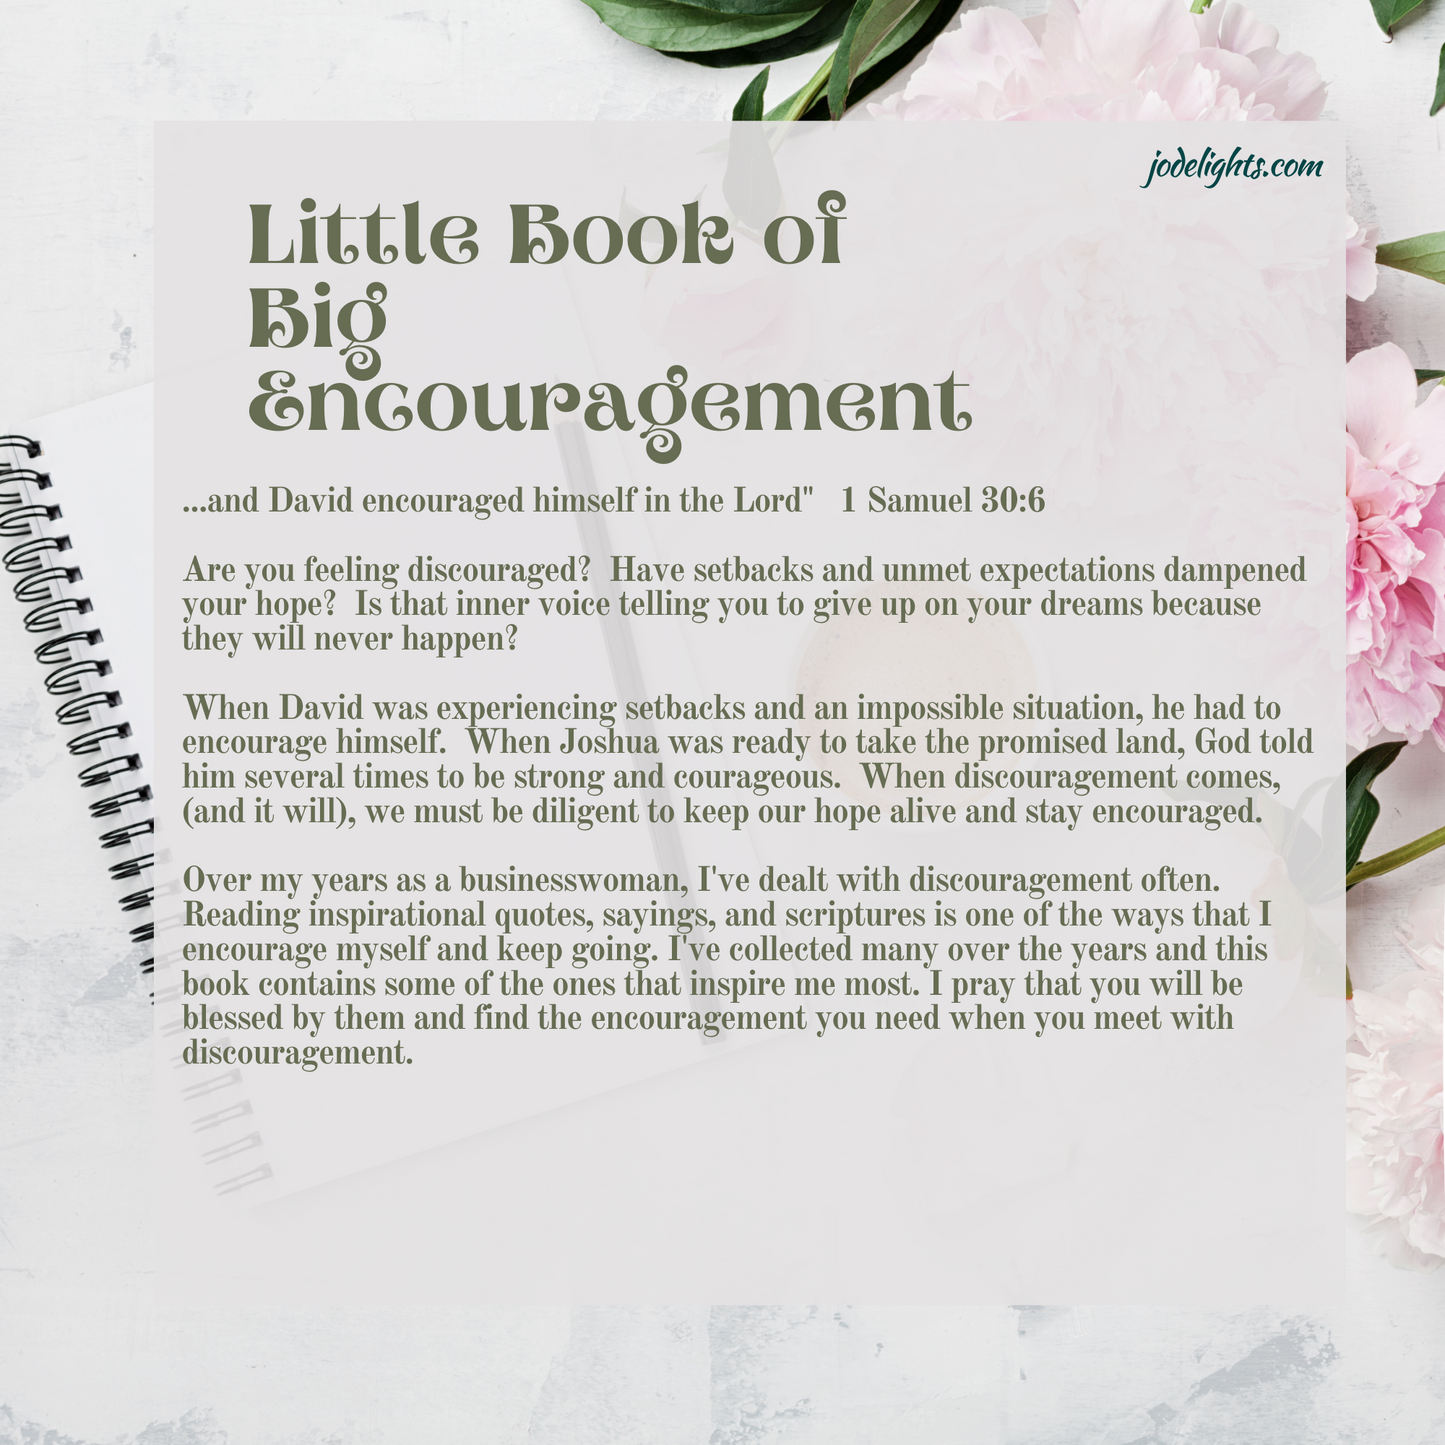 Little Book of BIG Encouragement (7.5 x 7.5)